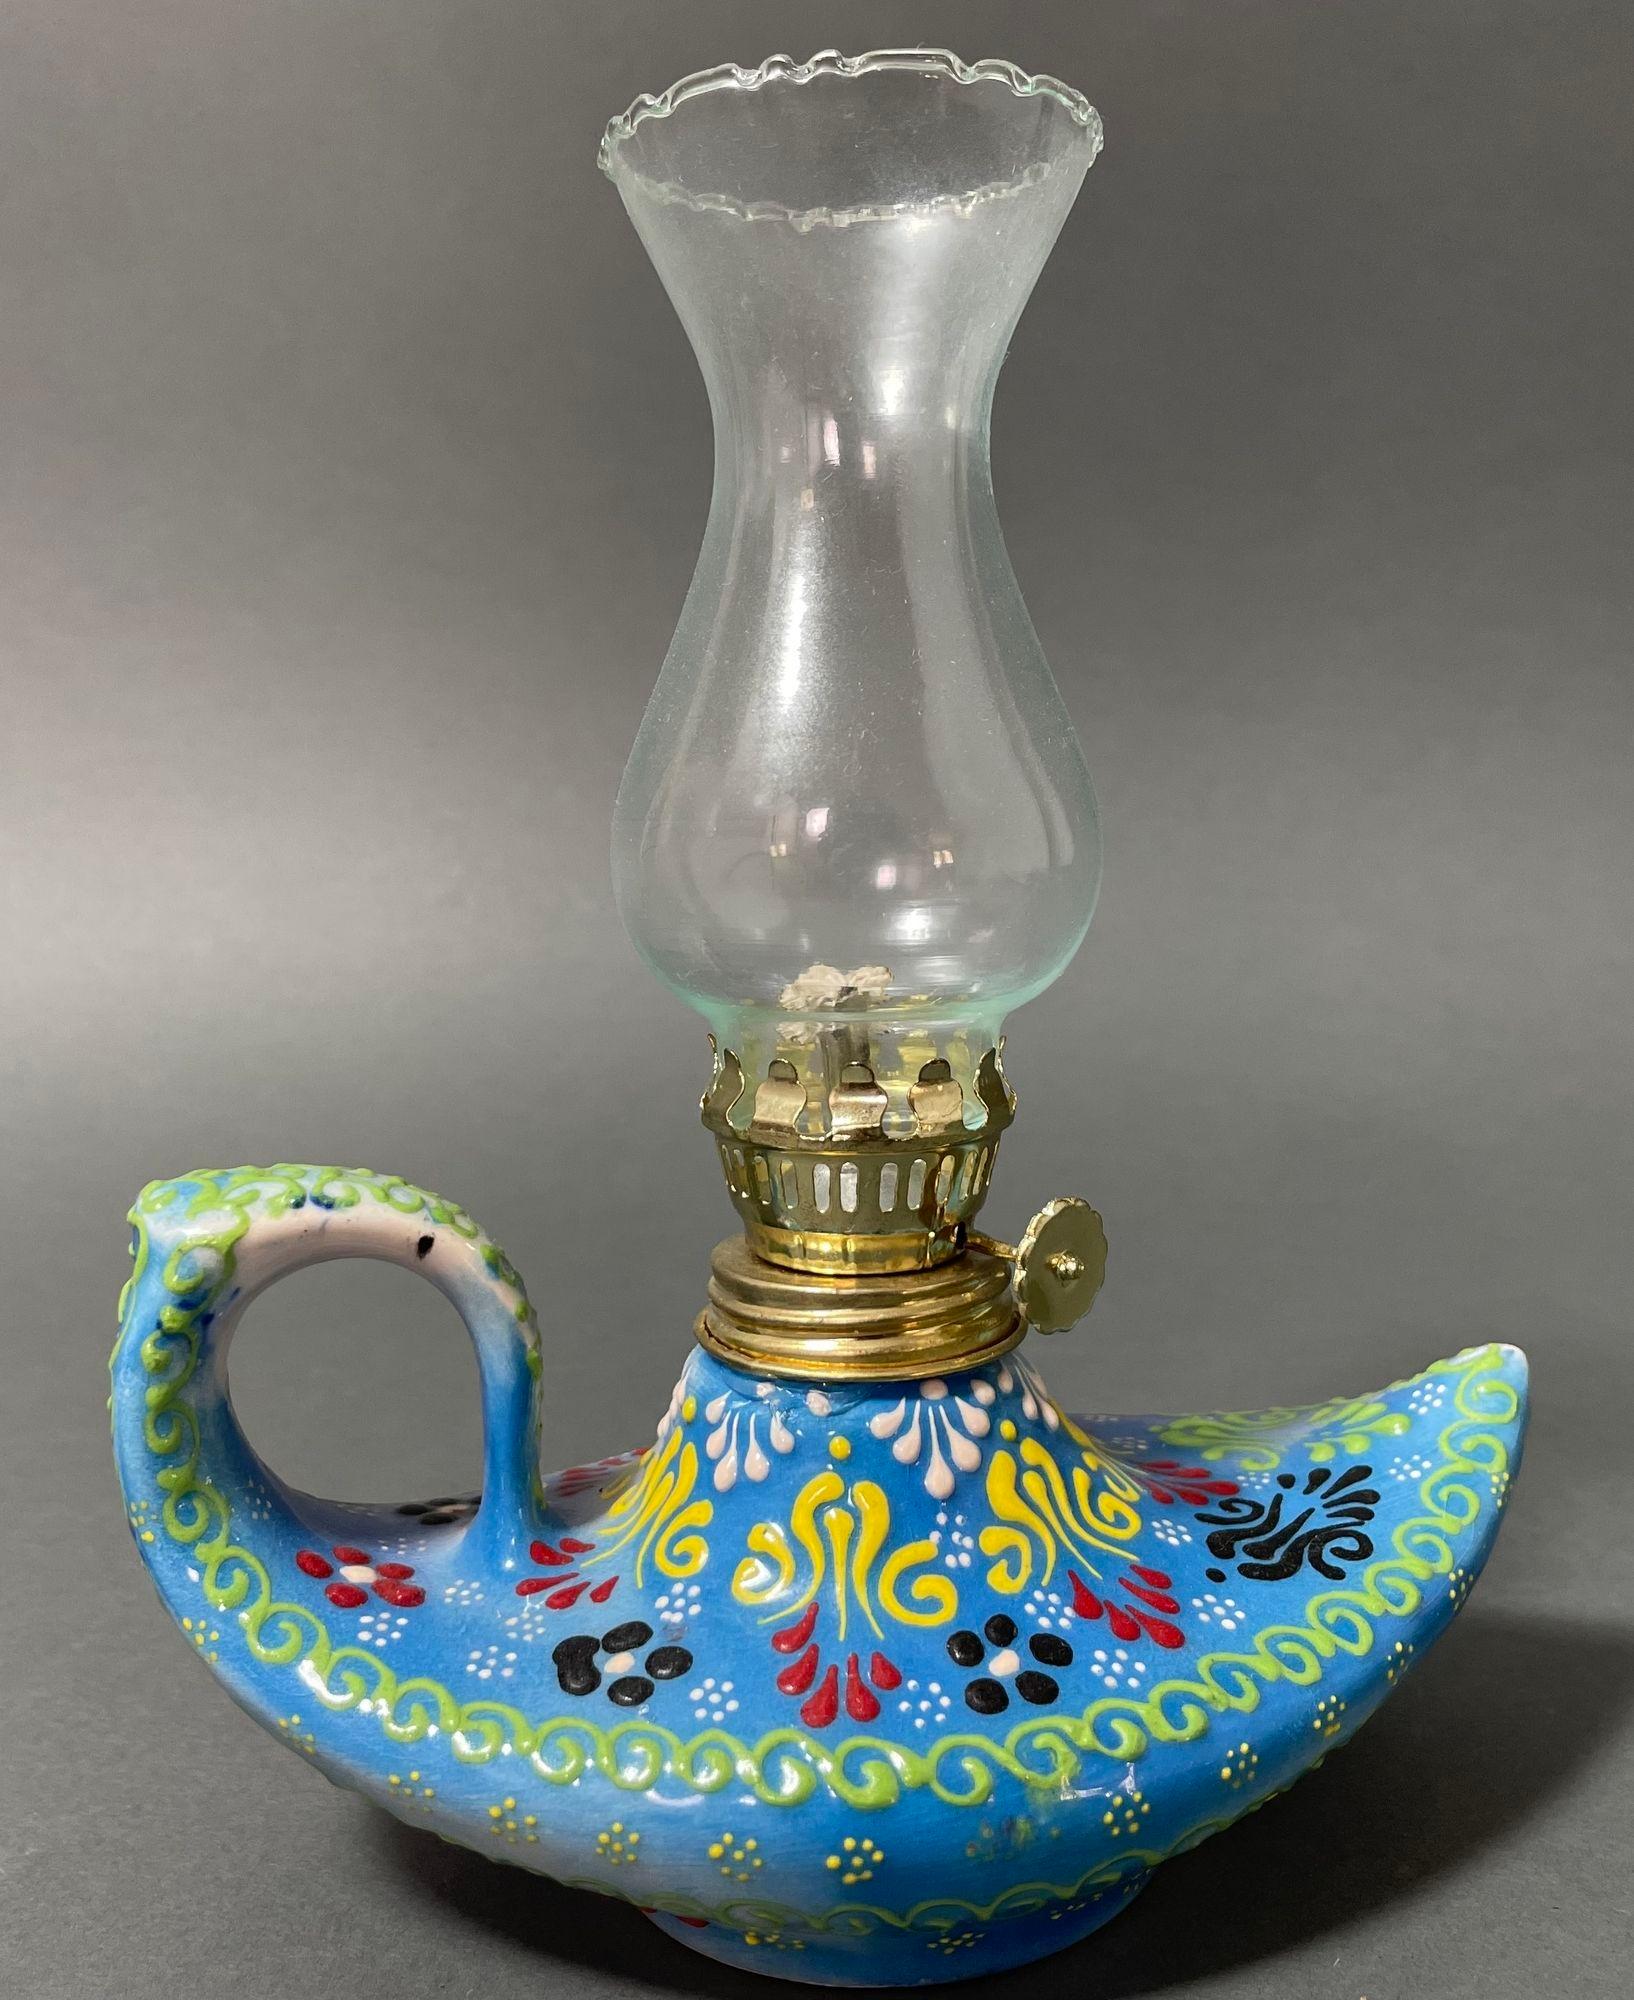 Aladin-Stil handgefertigte türkisblaue Keramik türkische Öllampe, Hurrikan Öllampe Laterne.
Diese Vintage-Öllampe hat einen Tonsockel, der an eine Aladinlampe aus Tausendundeiner Nacht erinnert.
Texturierte, handbemalte Keramik mit traditionellem